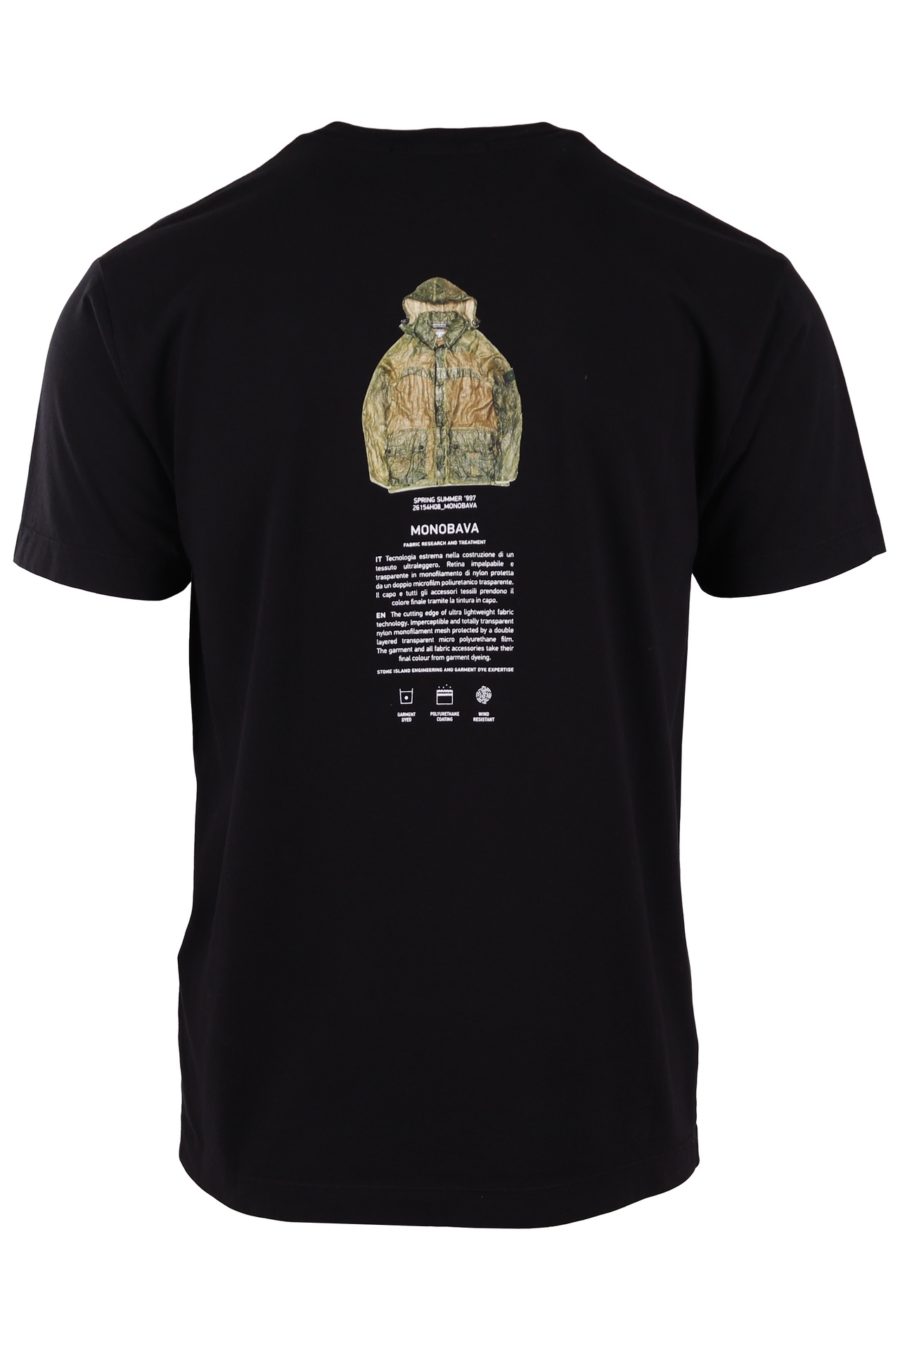 T-shirt Stone Island noir avec logo "archivio" - 22d5c84adfa677dabd0422034ff84f27f78f2575